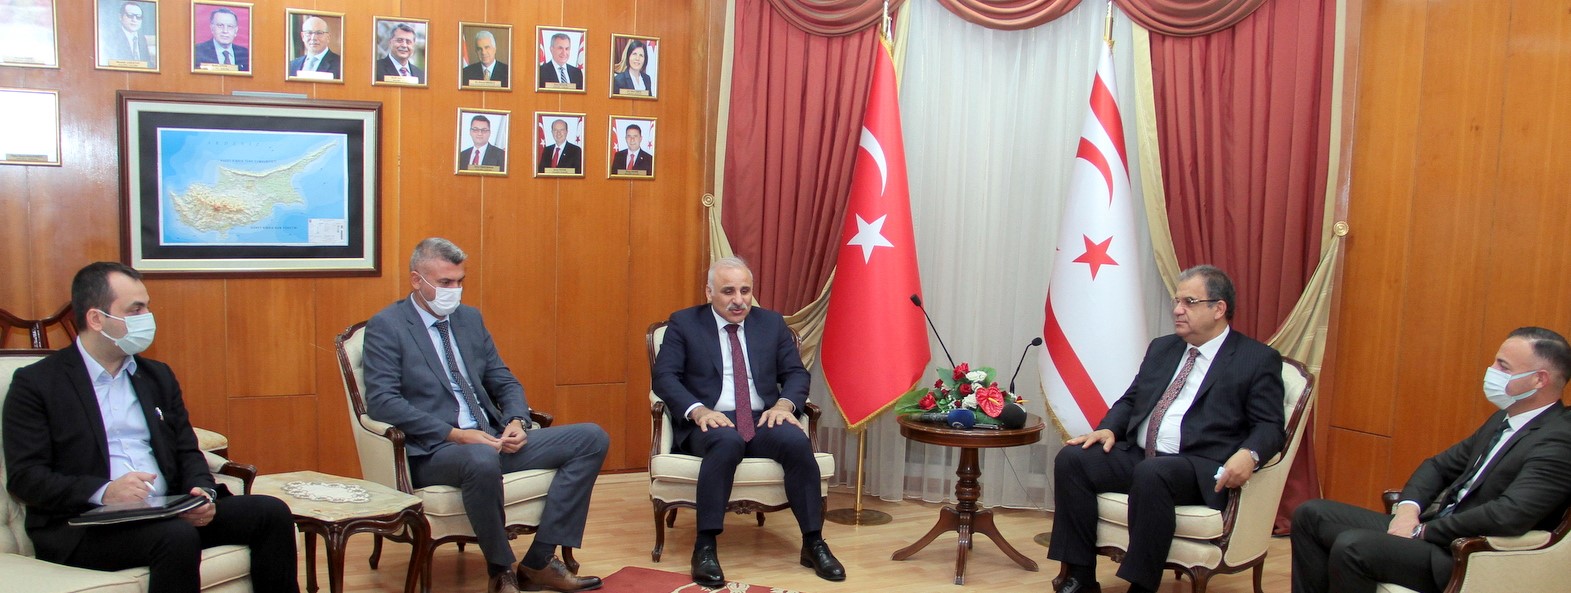 Sucuoğlu: Türkiye ile iki Devlet bir milletiz